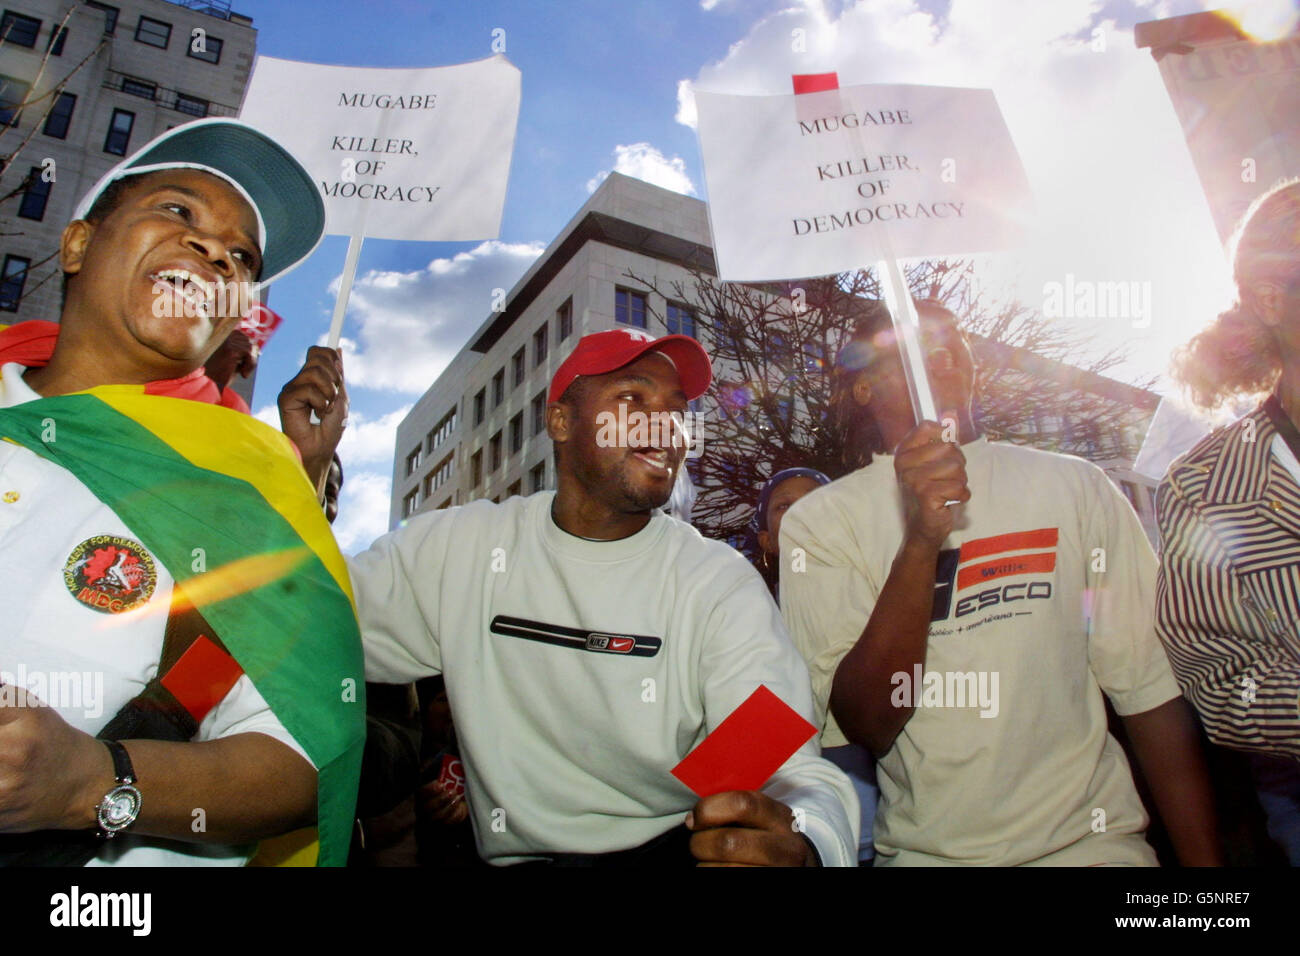 Manifestants devant la haute Commission de la République du Zimbabwe dans le centre de Londres. Environ 200 000 Zimbabwéens exilés et militants pro-démocratie se sont réunis aujourd'hui pour appeler le président zimbabwéen Robert Mugabe à autoriser des élections libres et équitables. *la manifestation a eu lieu alors que le Premier ministre Tony Blair a été mis sur le point de recommander la suspension de Harare du Commonwealth lors du sommet de l'organisation en Australie ce week-end. Dix des militants, dont le militant des droits des homosexuels Peter Tatchell, ont organisé une grève de la faim de 36 heures qui a commencé ce matin à 8 heures. M. Mugabe, qui doit faire face au plus sérieux test de sa présence Banque D'Images